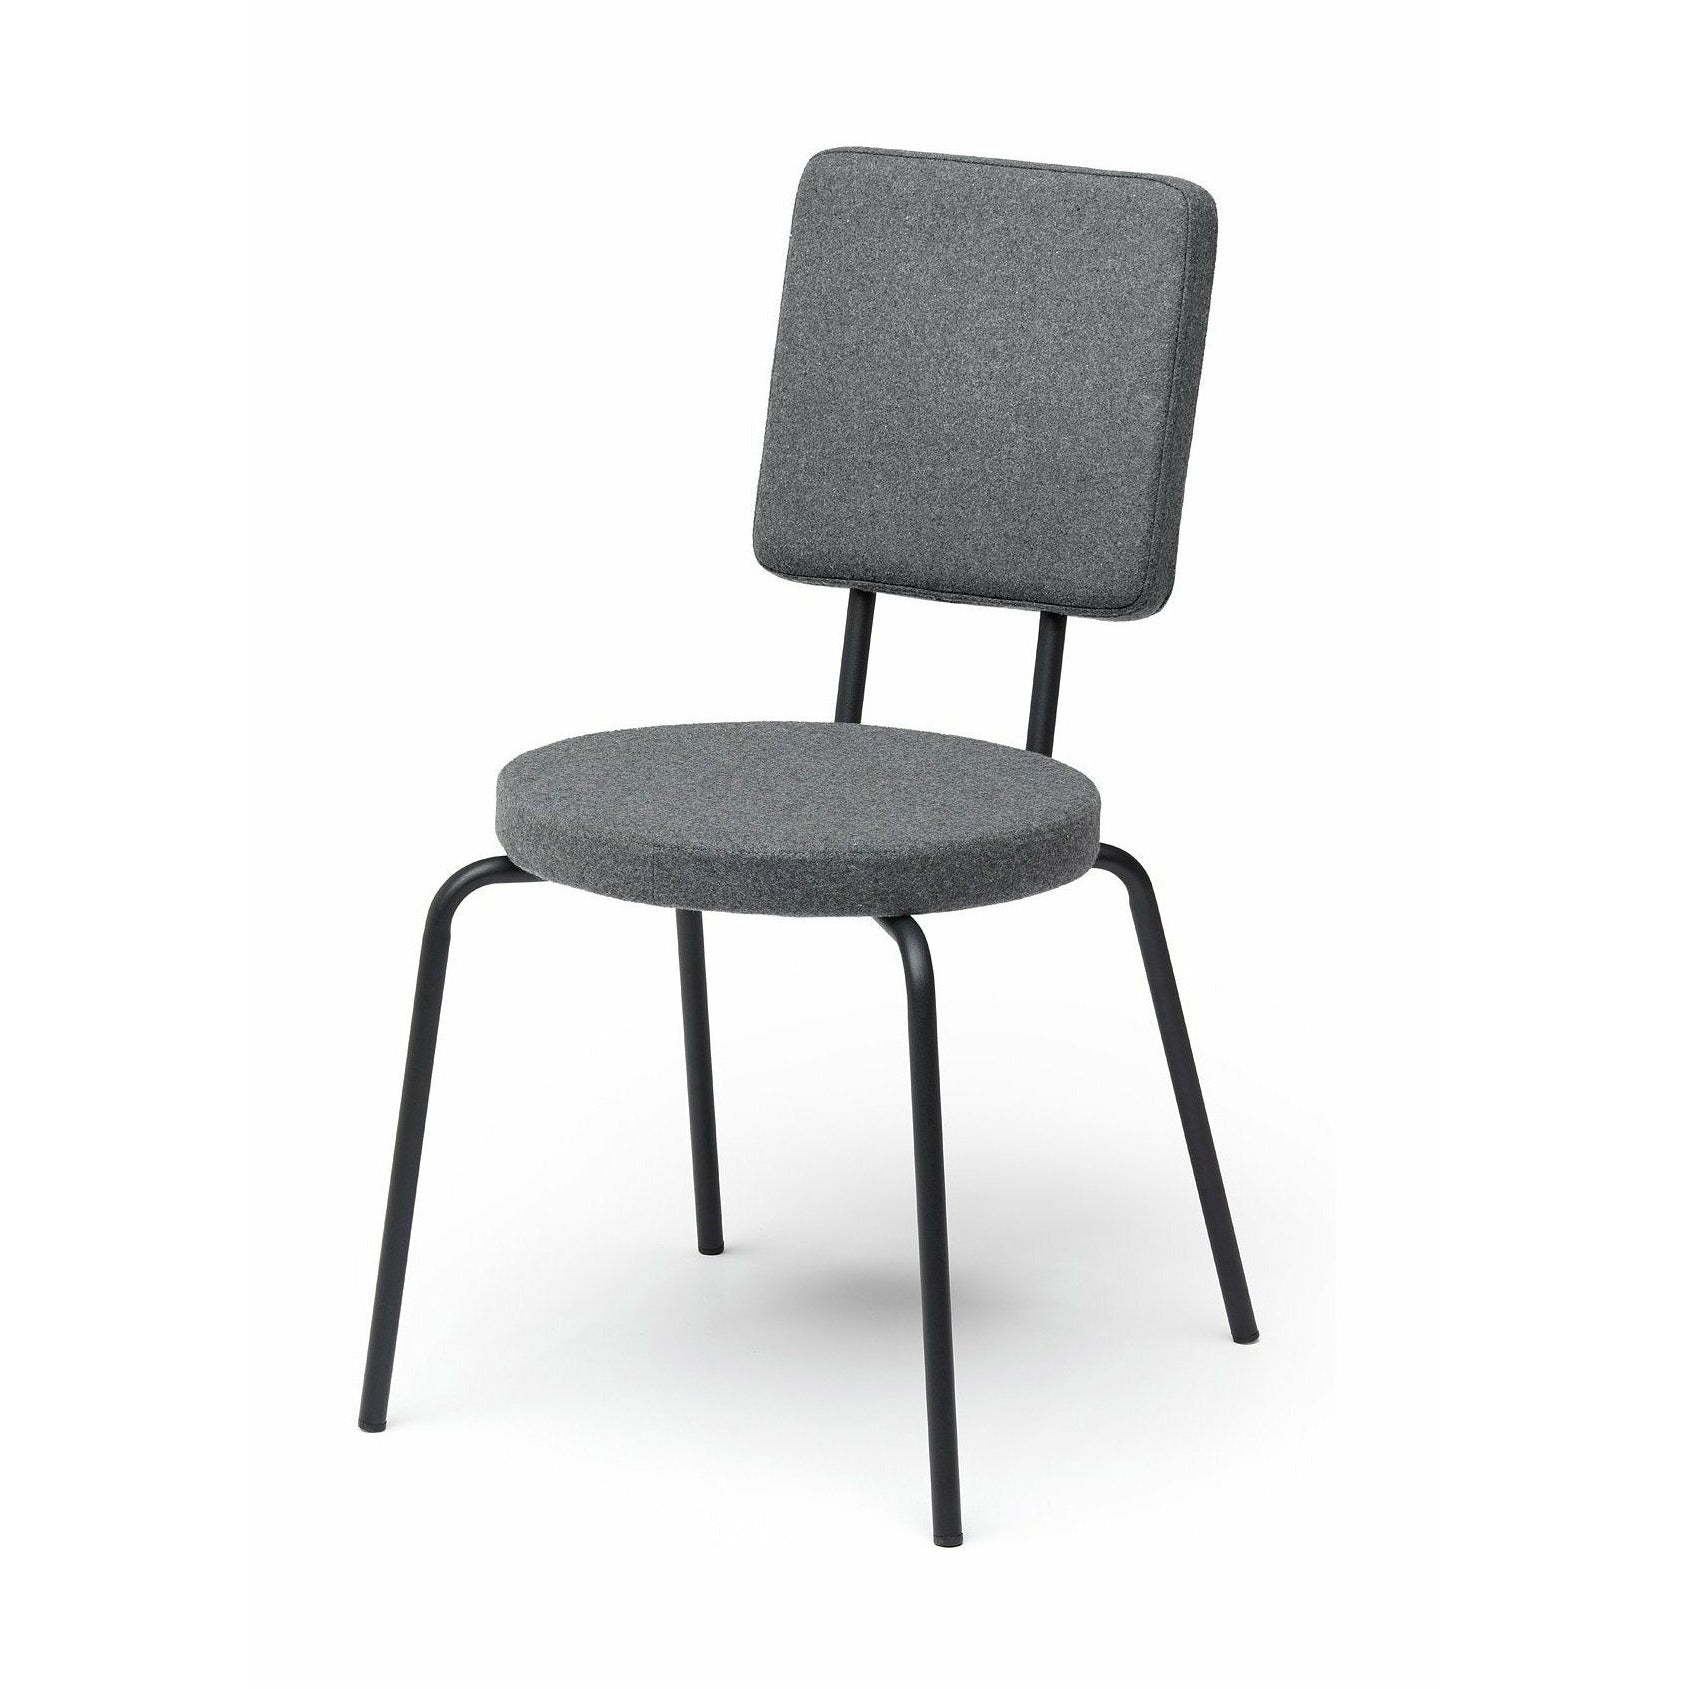 Puik Option chaise siège rond / dossier carré, gris clair